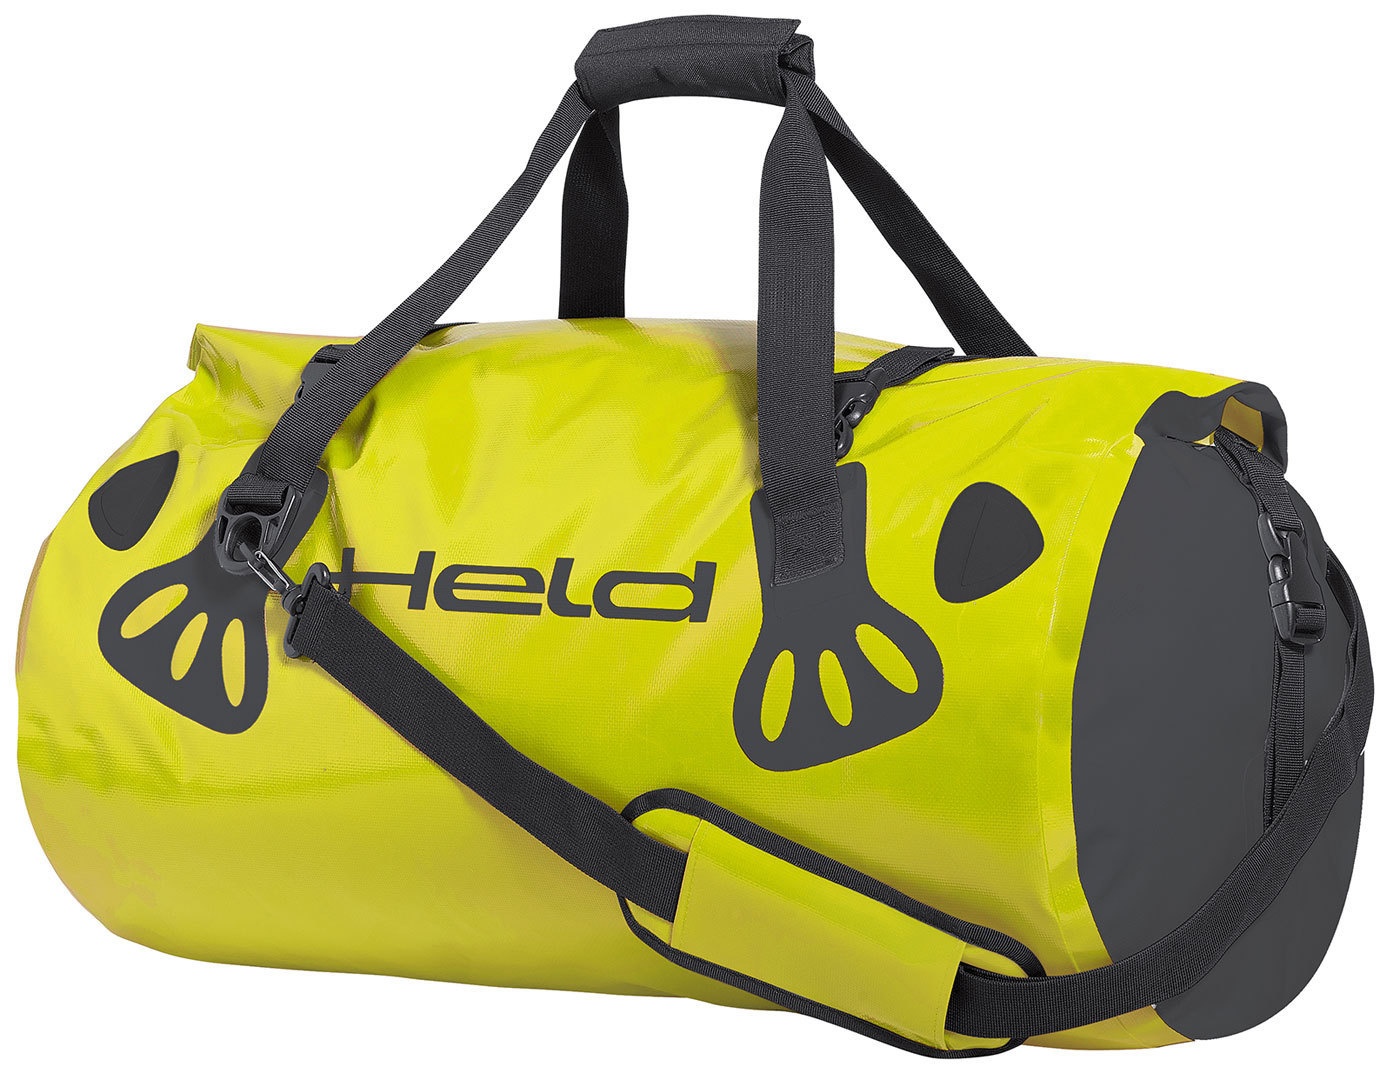 Held Carry-Bag Bagage tas, zwart-geel, 51-60l